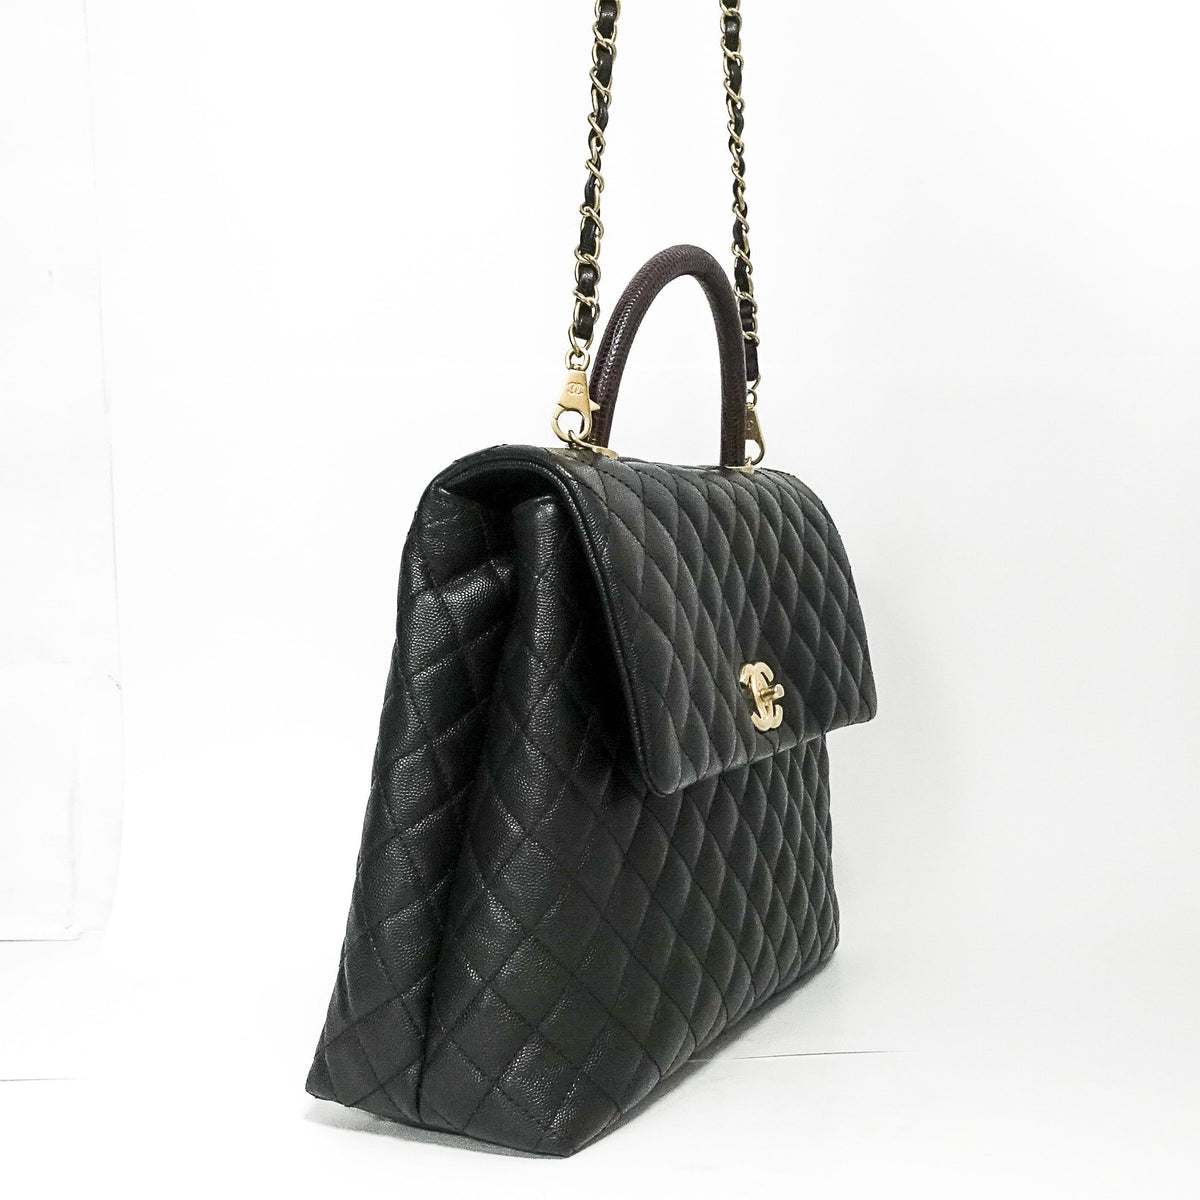 Get huge discounts on Chanel Coco Lizard Handle Bag Chanel . Get